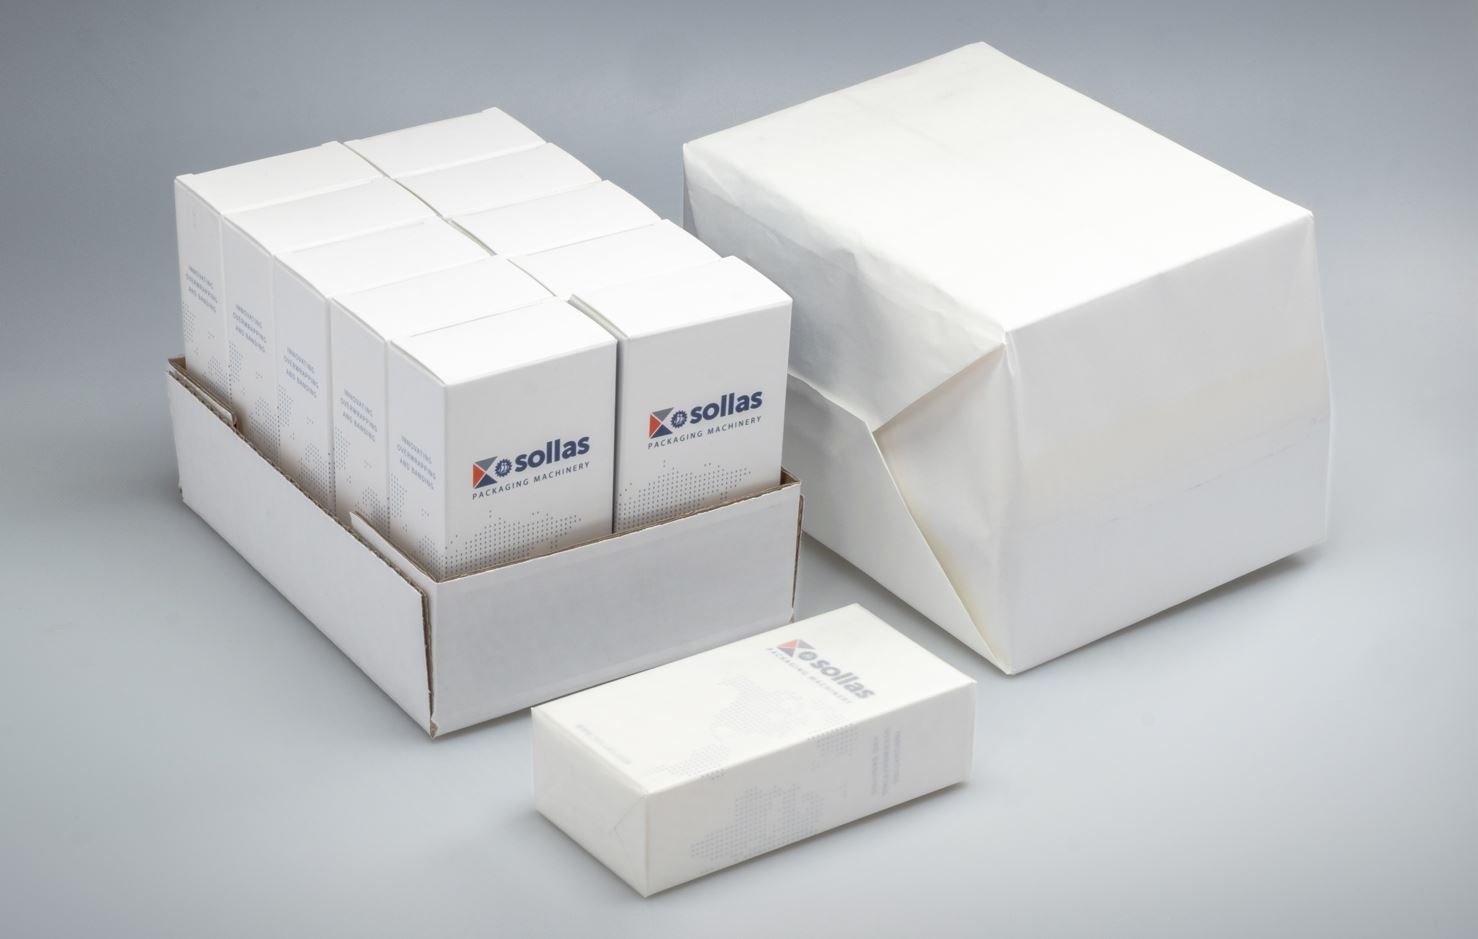 Sollas Packaging Machinery toont tijdens de interpack een volledig duurzame “end of line” verpakkingsoplossing.